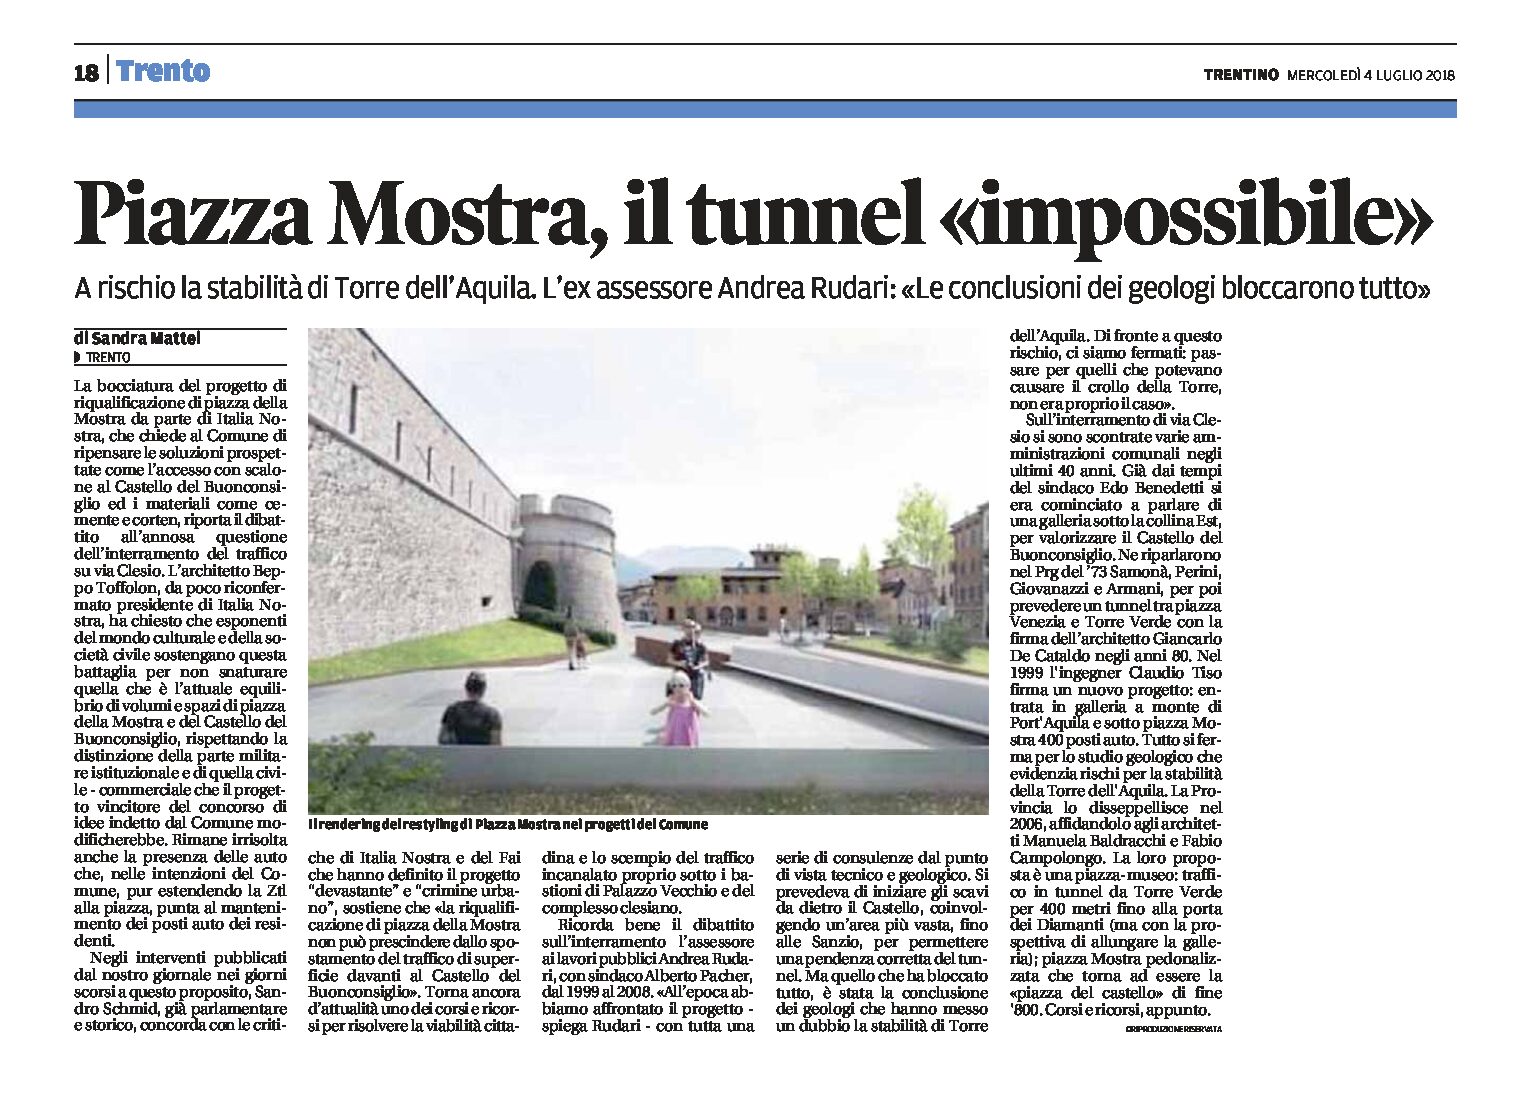 Trento, piazza Mostra: il tunnel “impossibile”.